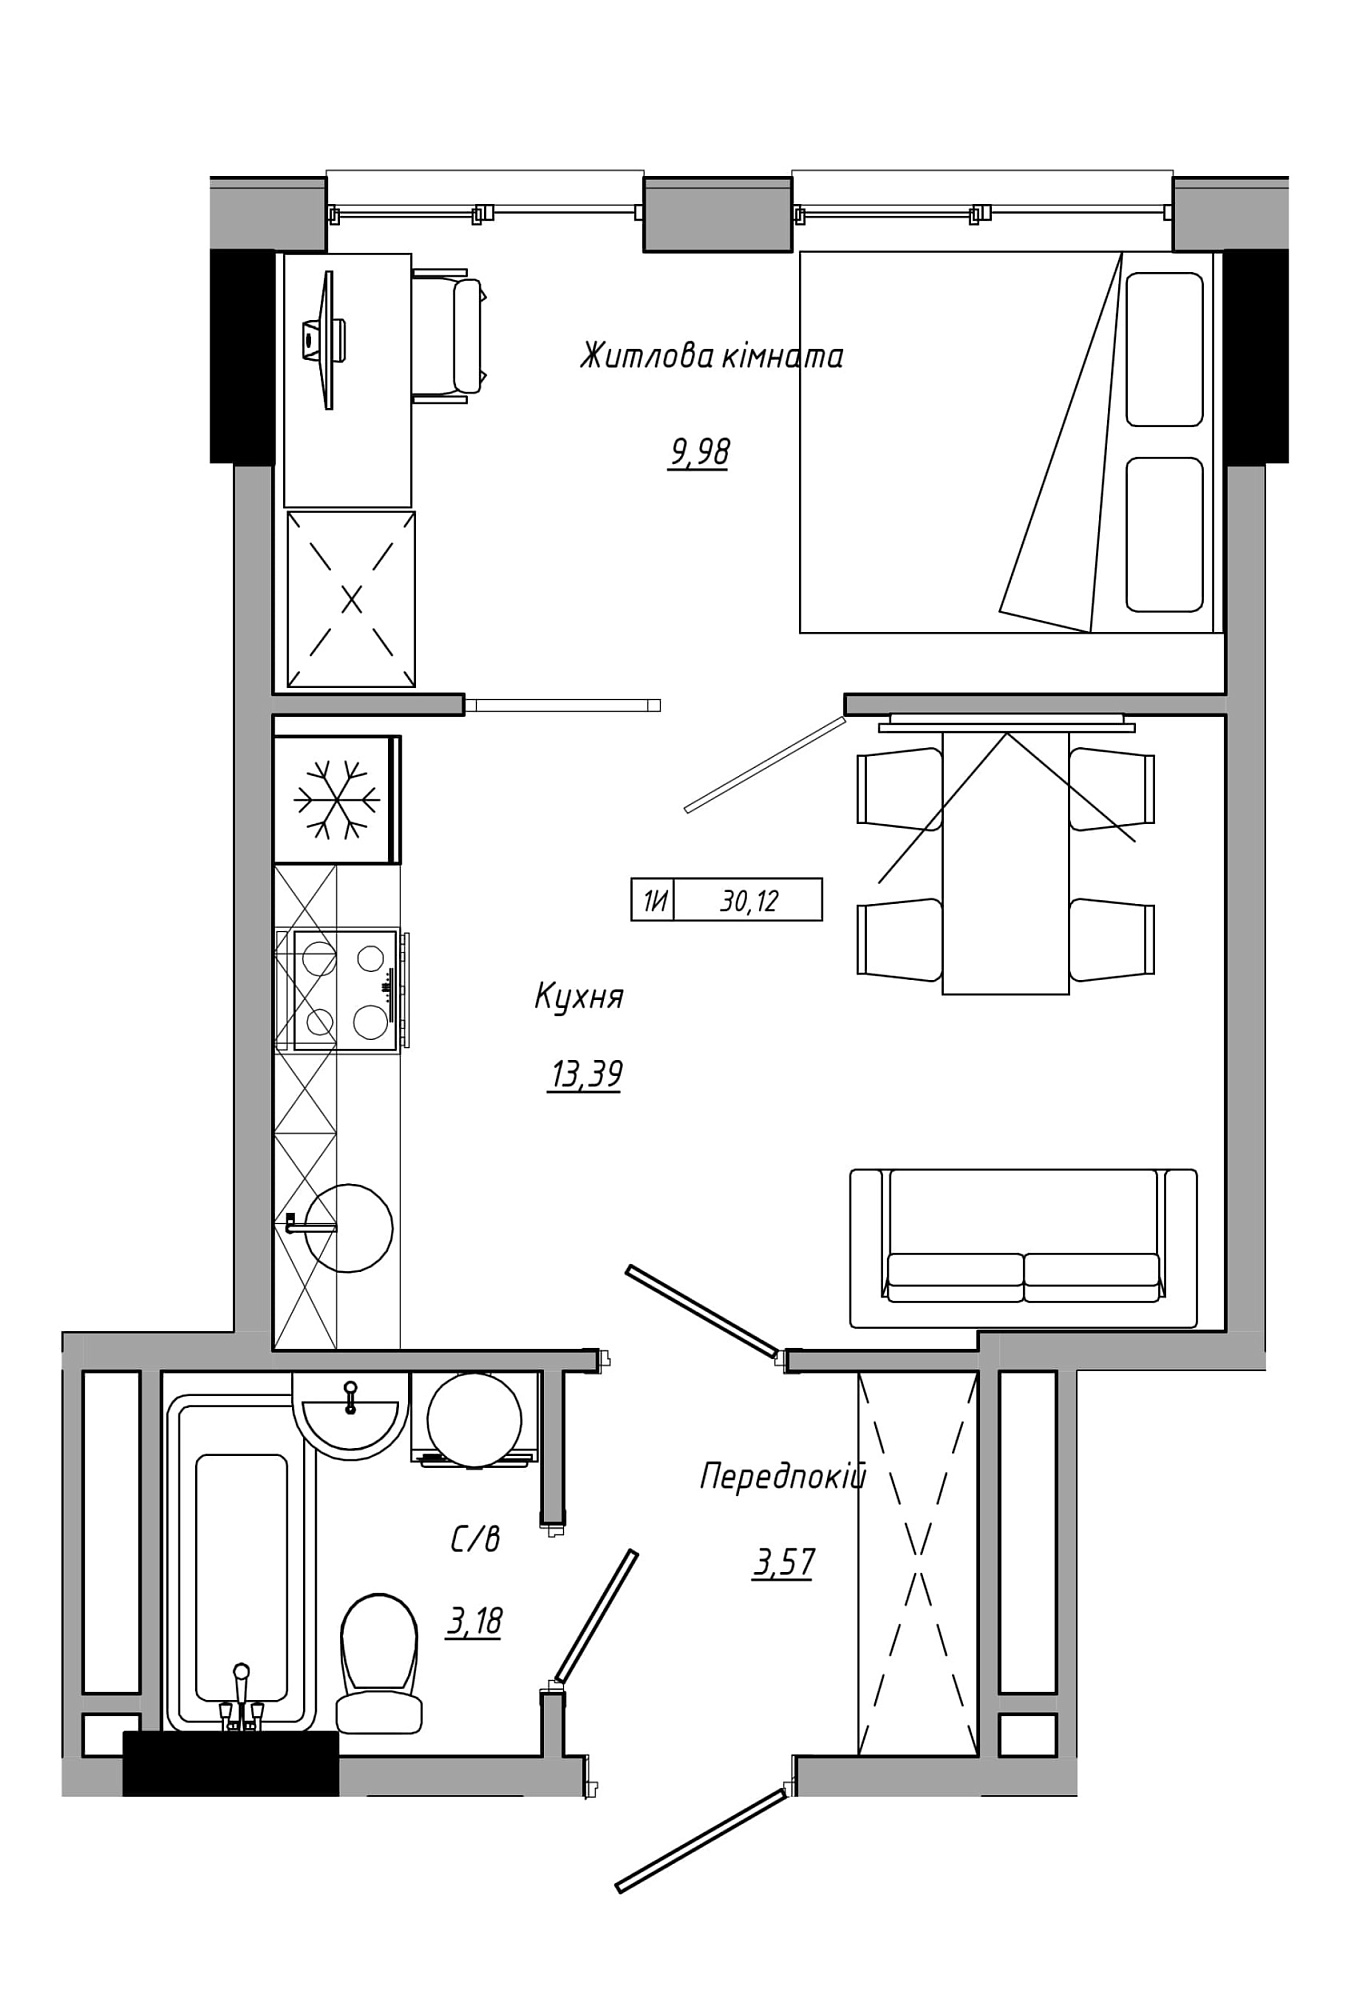 Планування 1-к квартира площею 30.12м2, AB-21-11/00012.